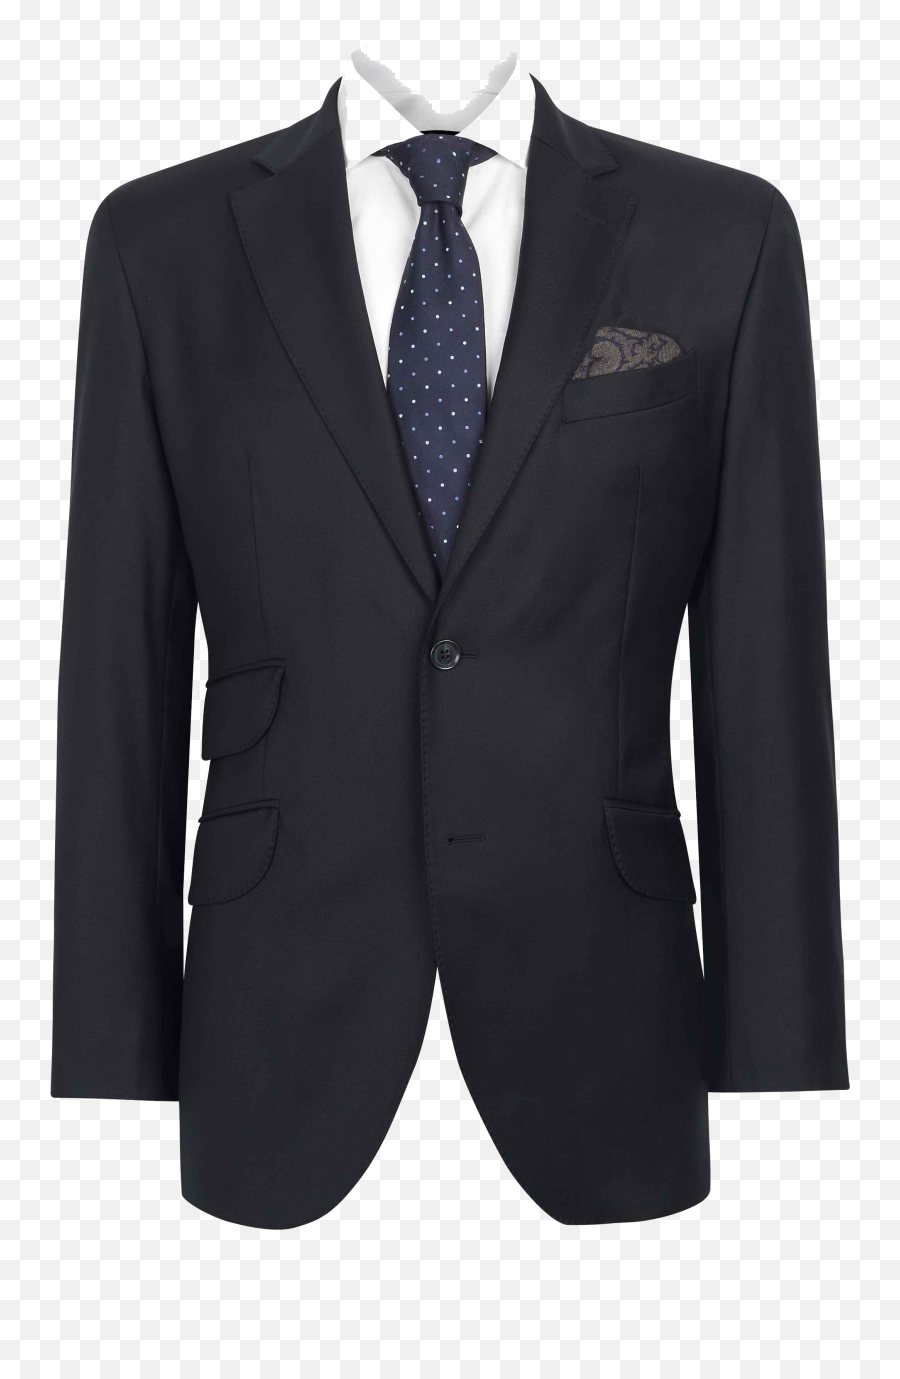 Download Suit Png Image - Suit Transparent,Suit Transparent Background